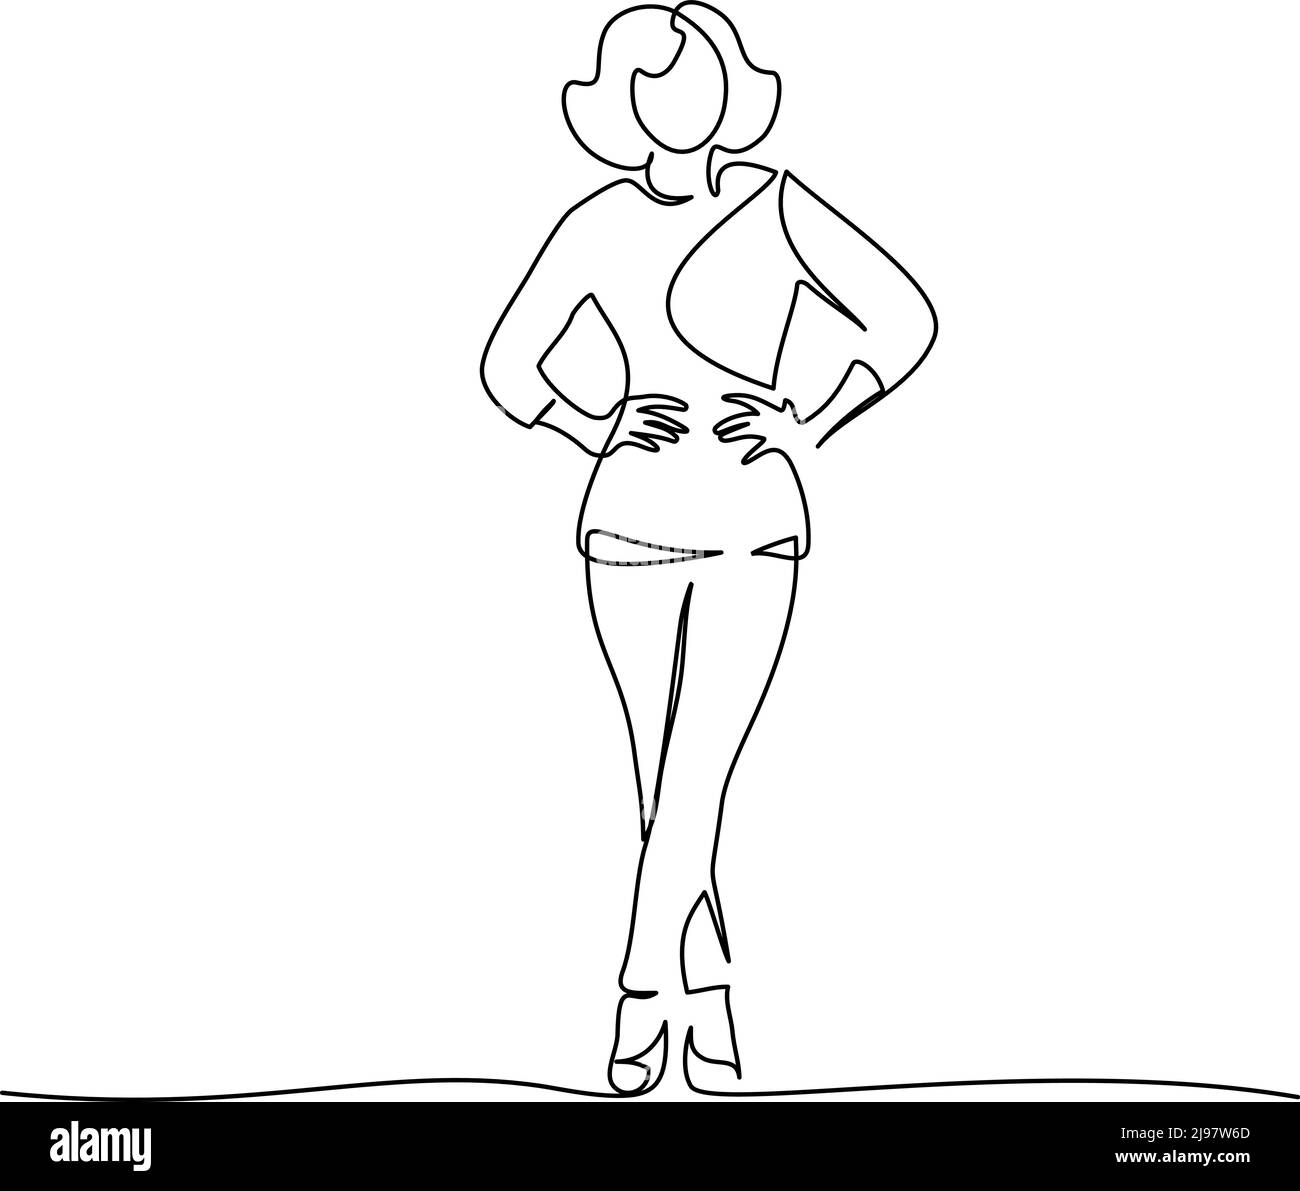 Schlankes Mädchen, das in Hosen steht. Fortlaufende einzeilige Zeichnung. Vektorgrafik Stock Vektor